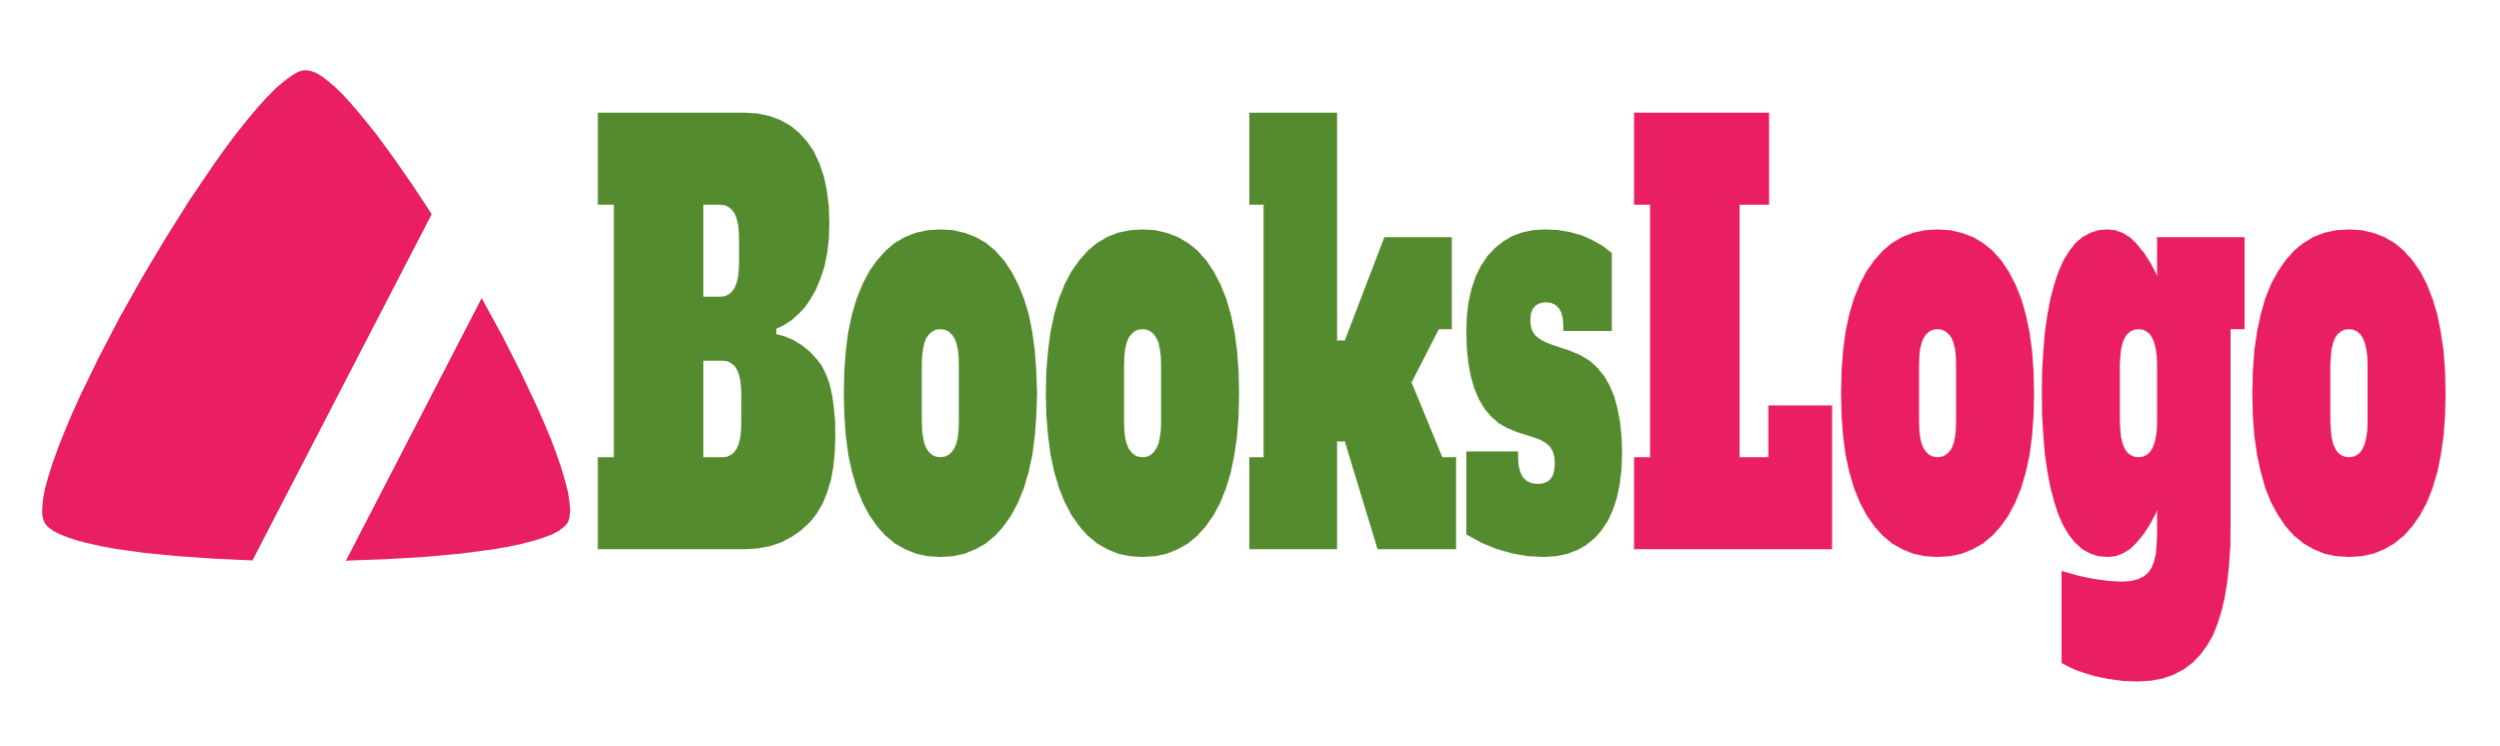 BooksLogo.com